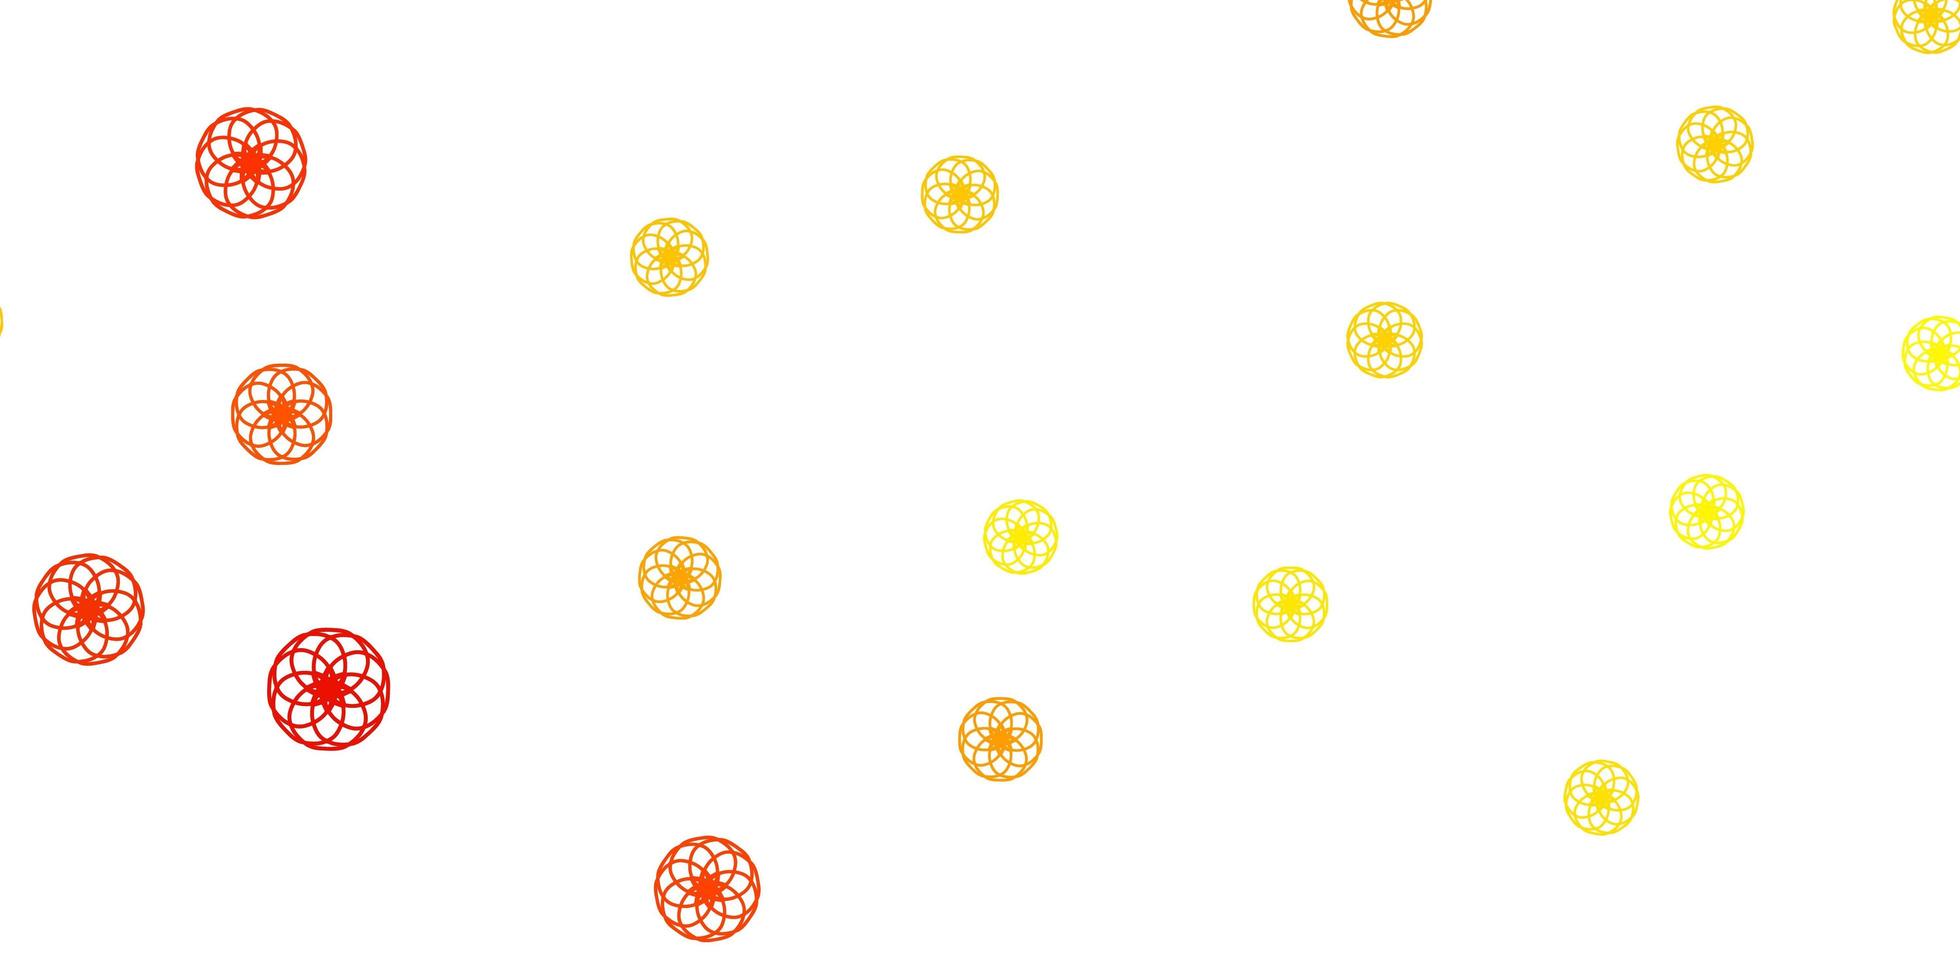 sfondo vettoriale giallo chiaro con bolle